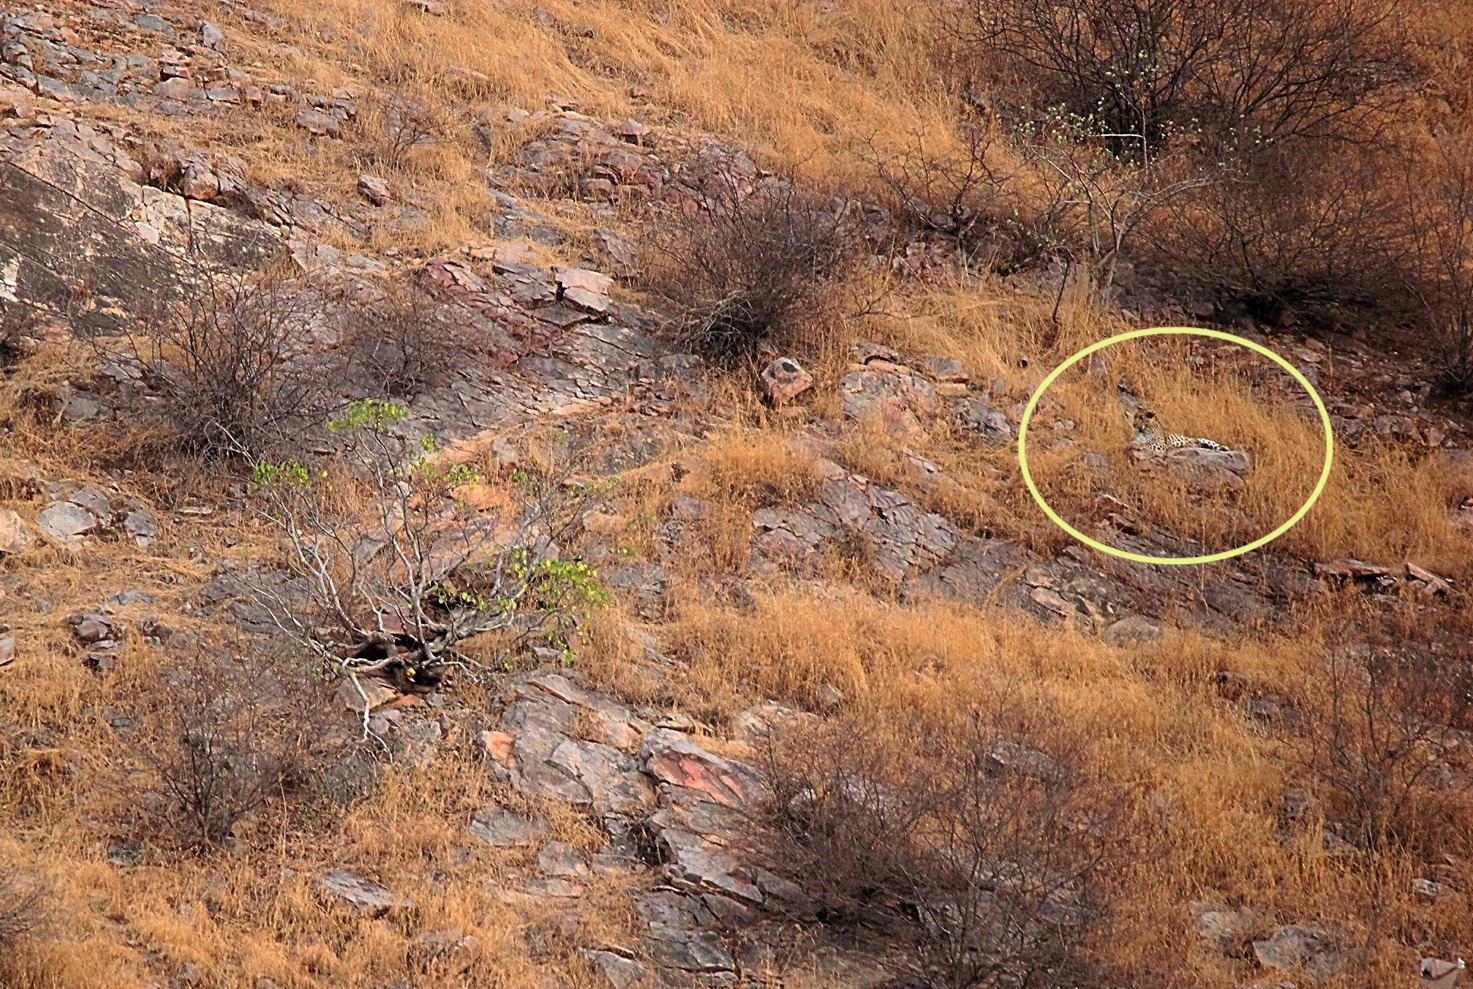 Le léopard se situe en haut à droite de l’image sur un rocher. © Abhinav Garg, Facebook, Sanctuary Nature Foundation